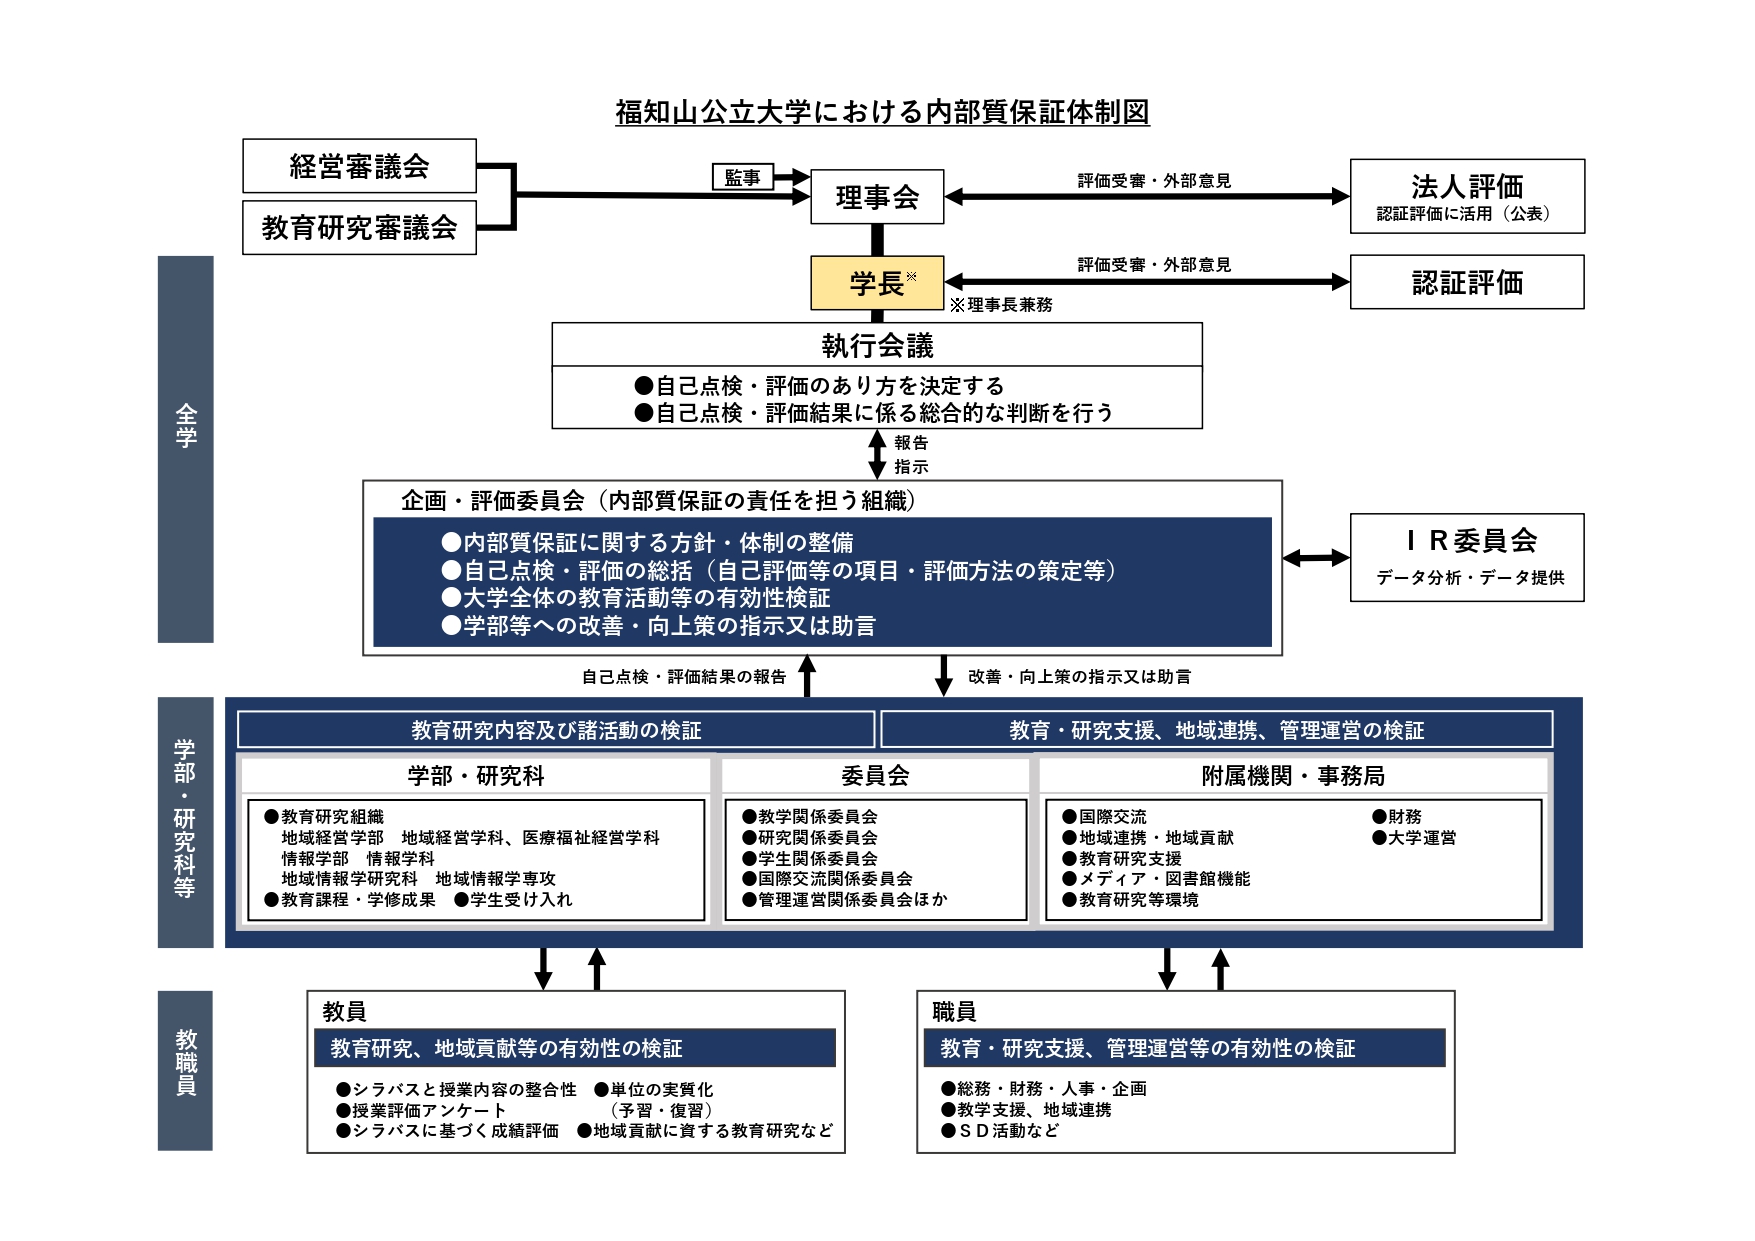 福知山公立大学における内部質保証体制図